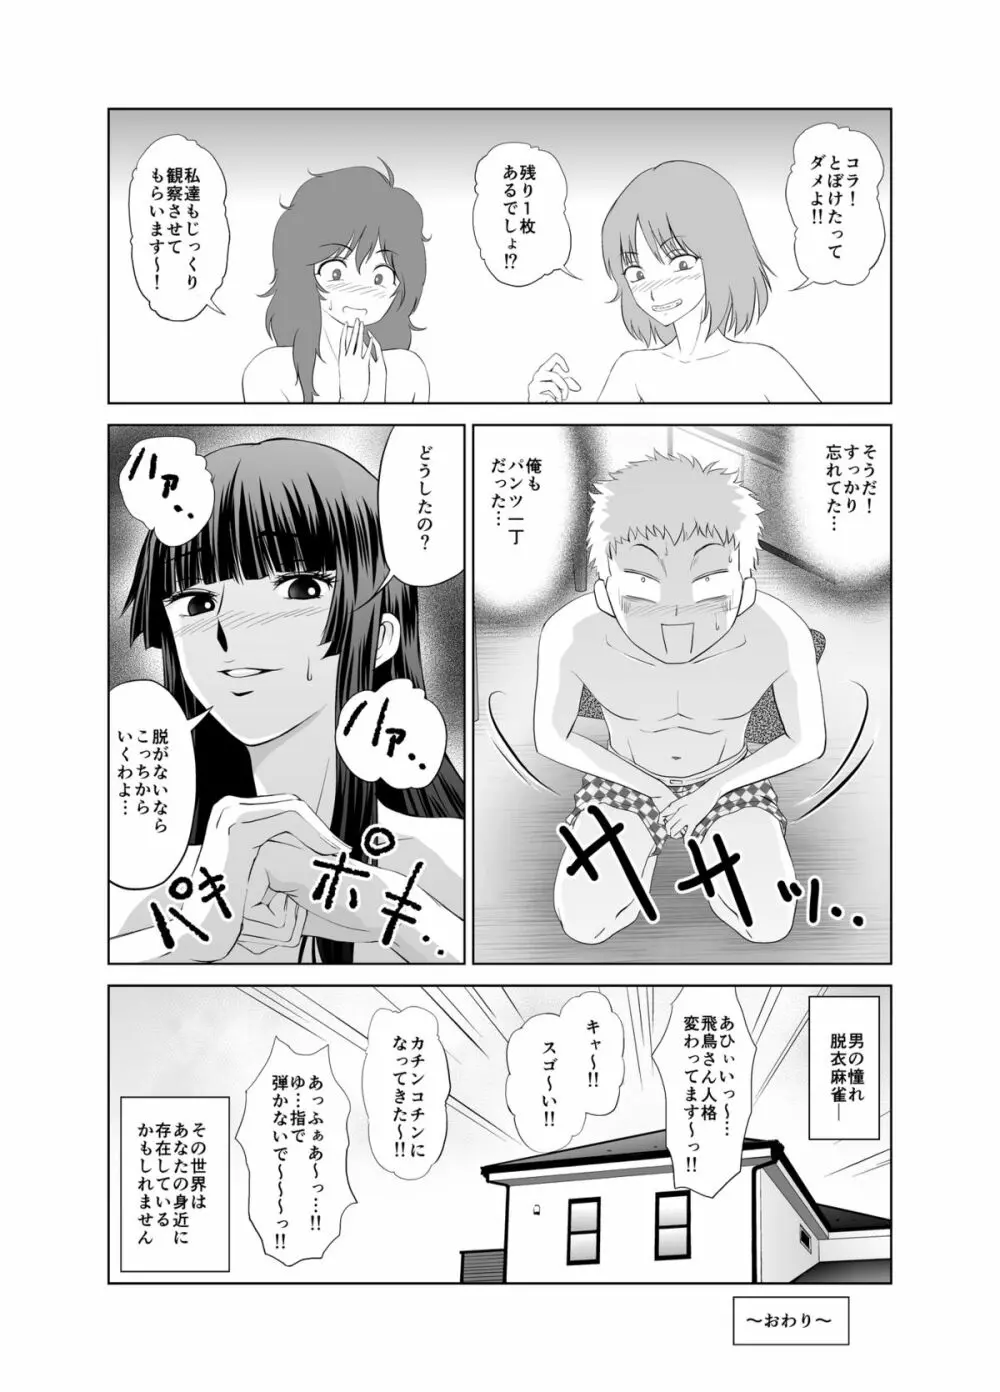 脱衣麻雀～漫画編～【完成版】 32ページ